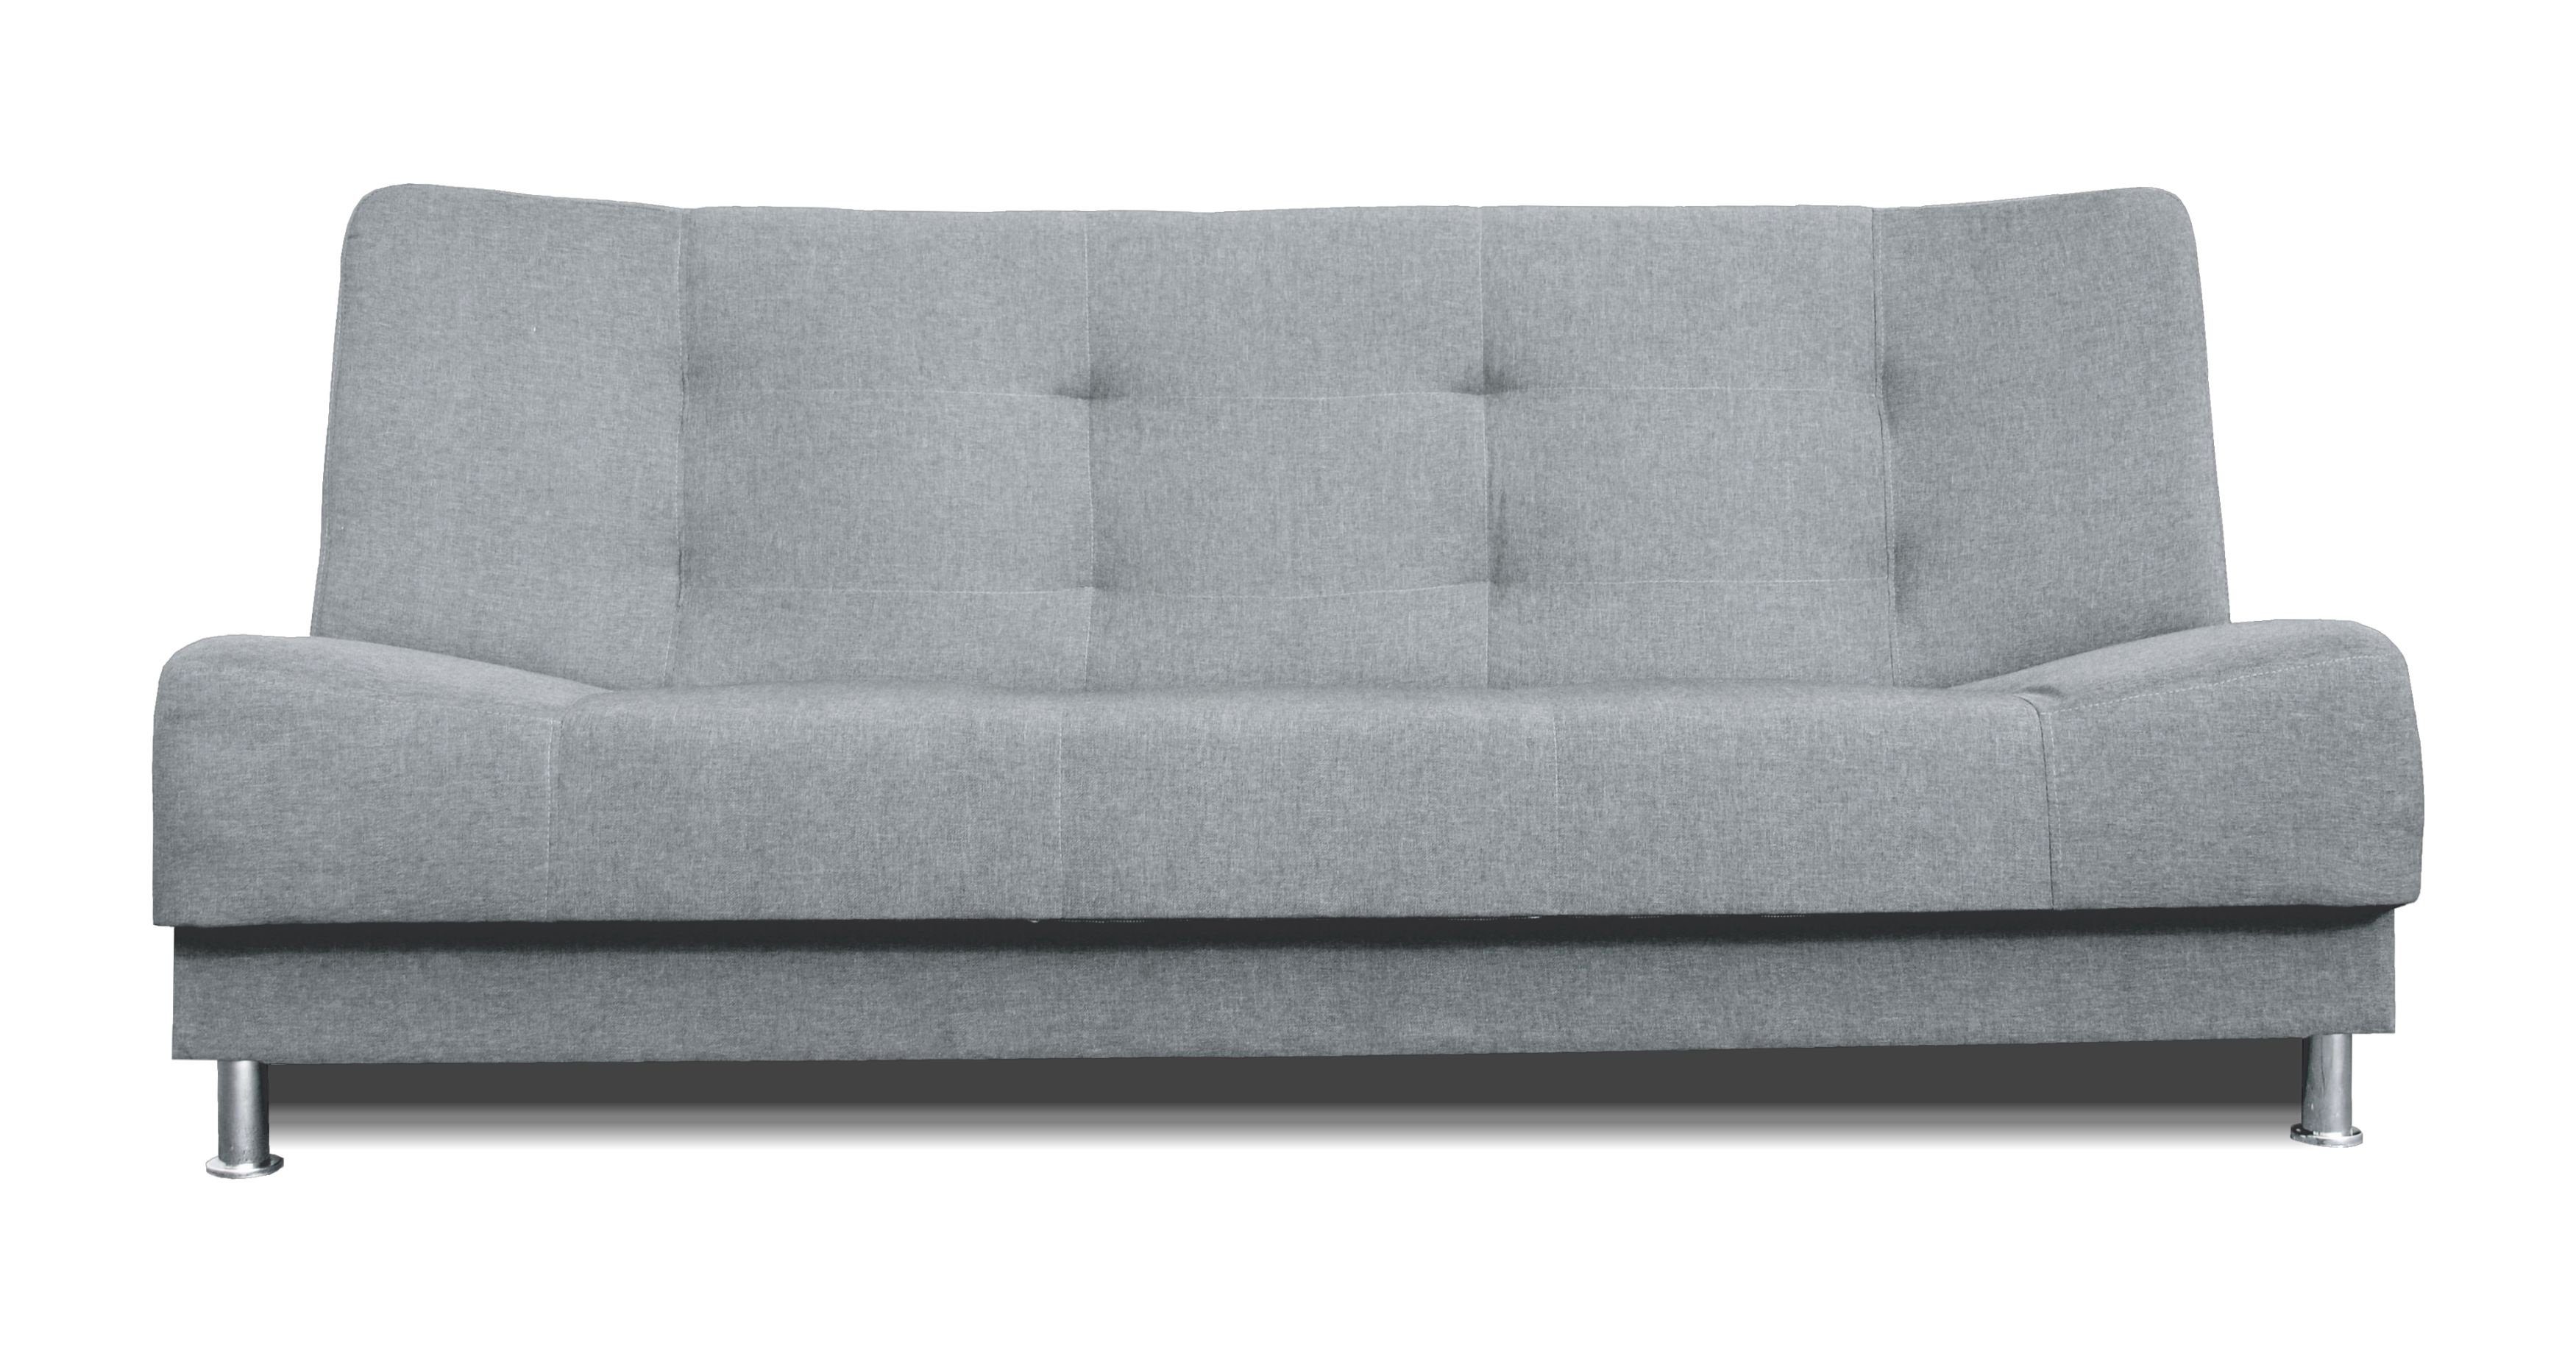 Dreisitzer-Sofa Grau Siblo mit Bettzeugbehälter, Vittoria Schlaffunktion, Dreisitzige 3-Sitzer Couch